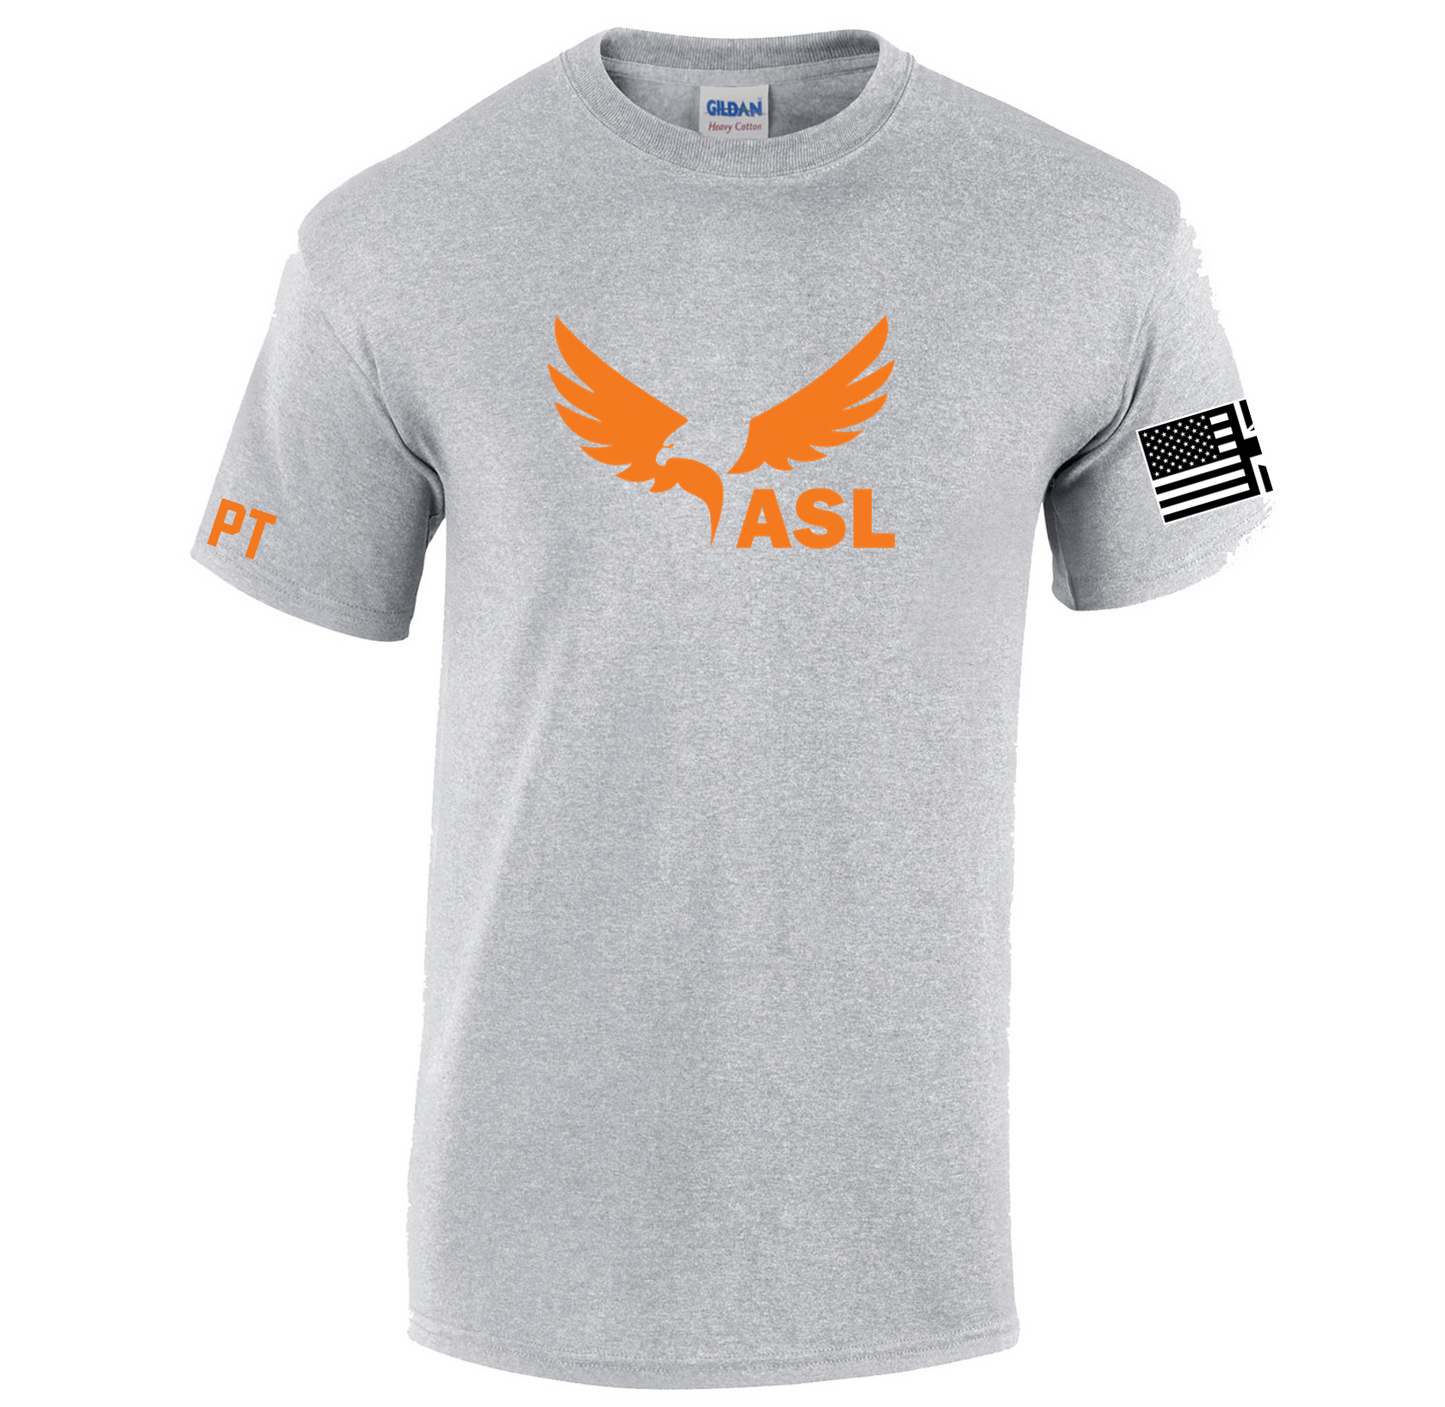 ASL Volleyball Tech Tee - Main Logo